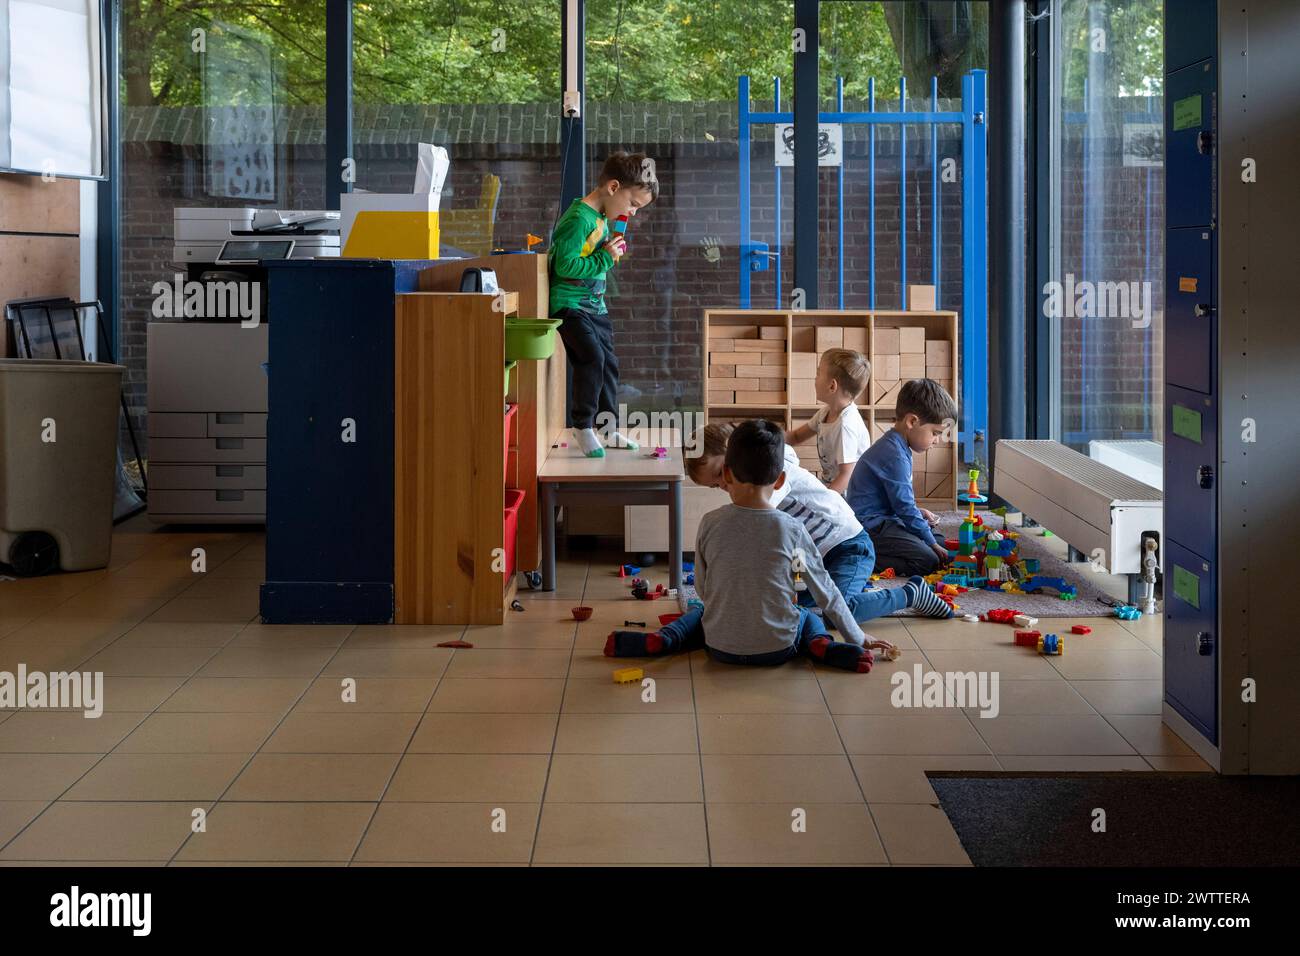 Kinder können spielerische Aktivitäten in einem farbenfrohen Indoor-Spielzimmer ausüben. Stockfoto